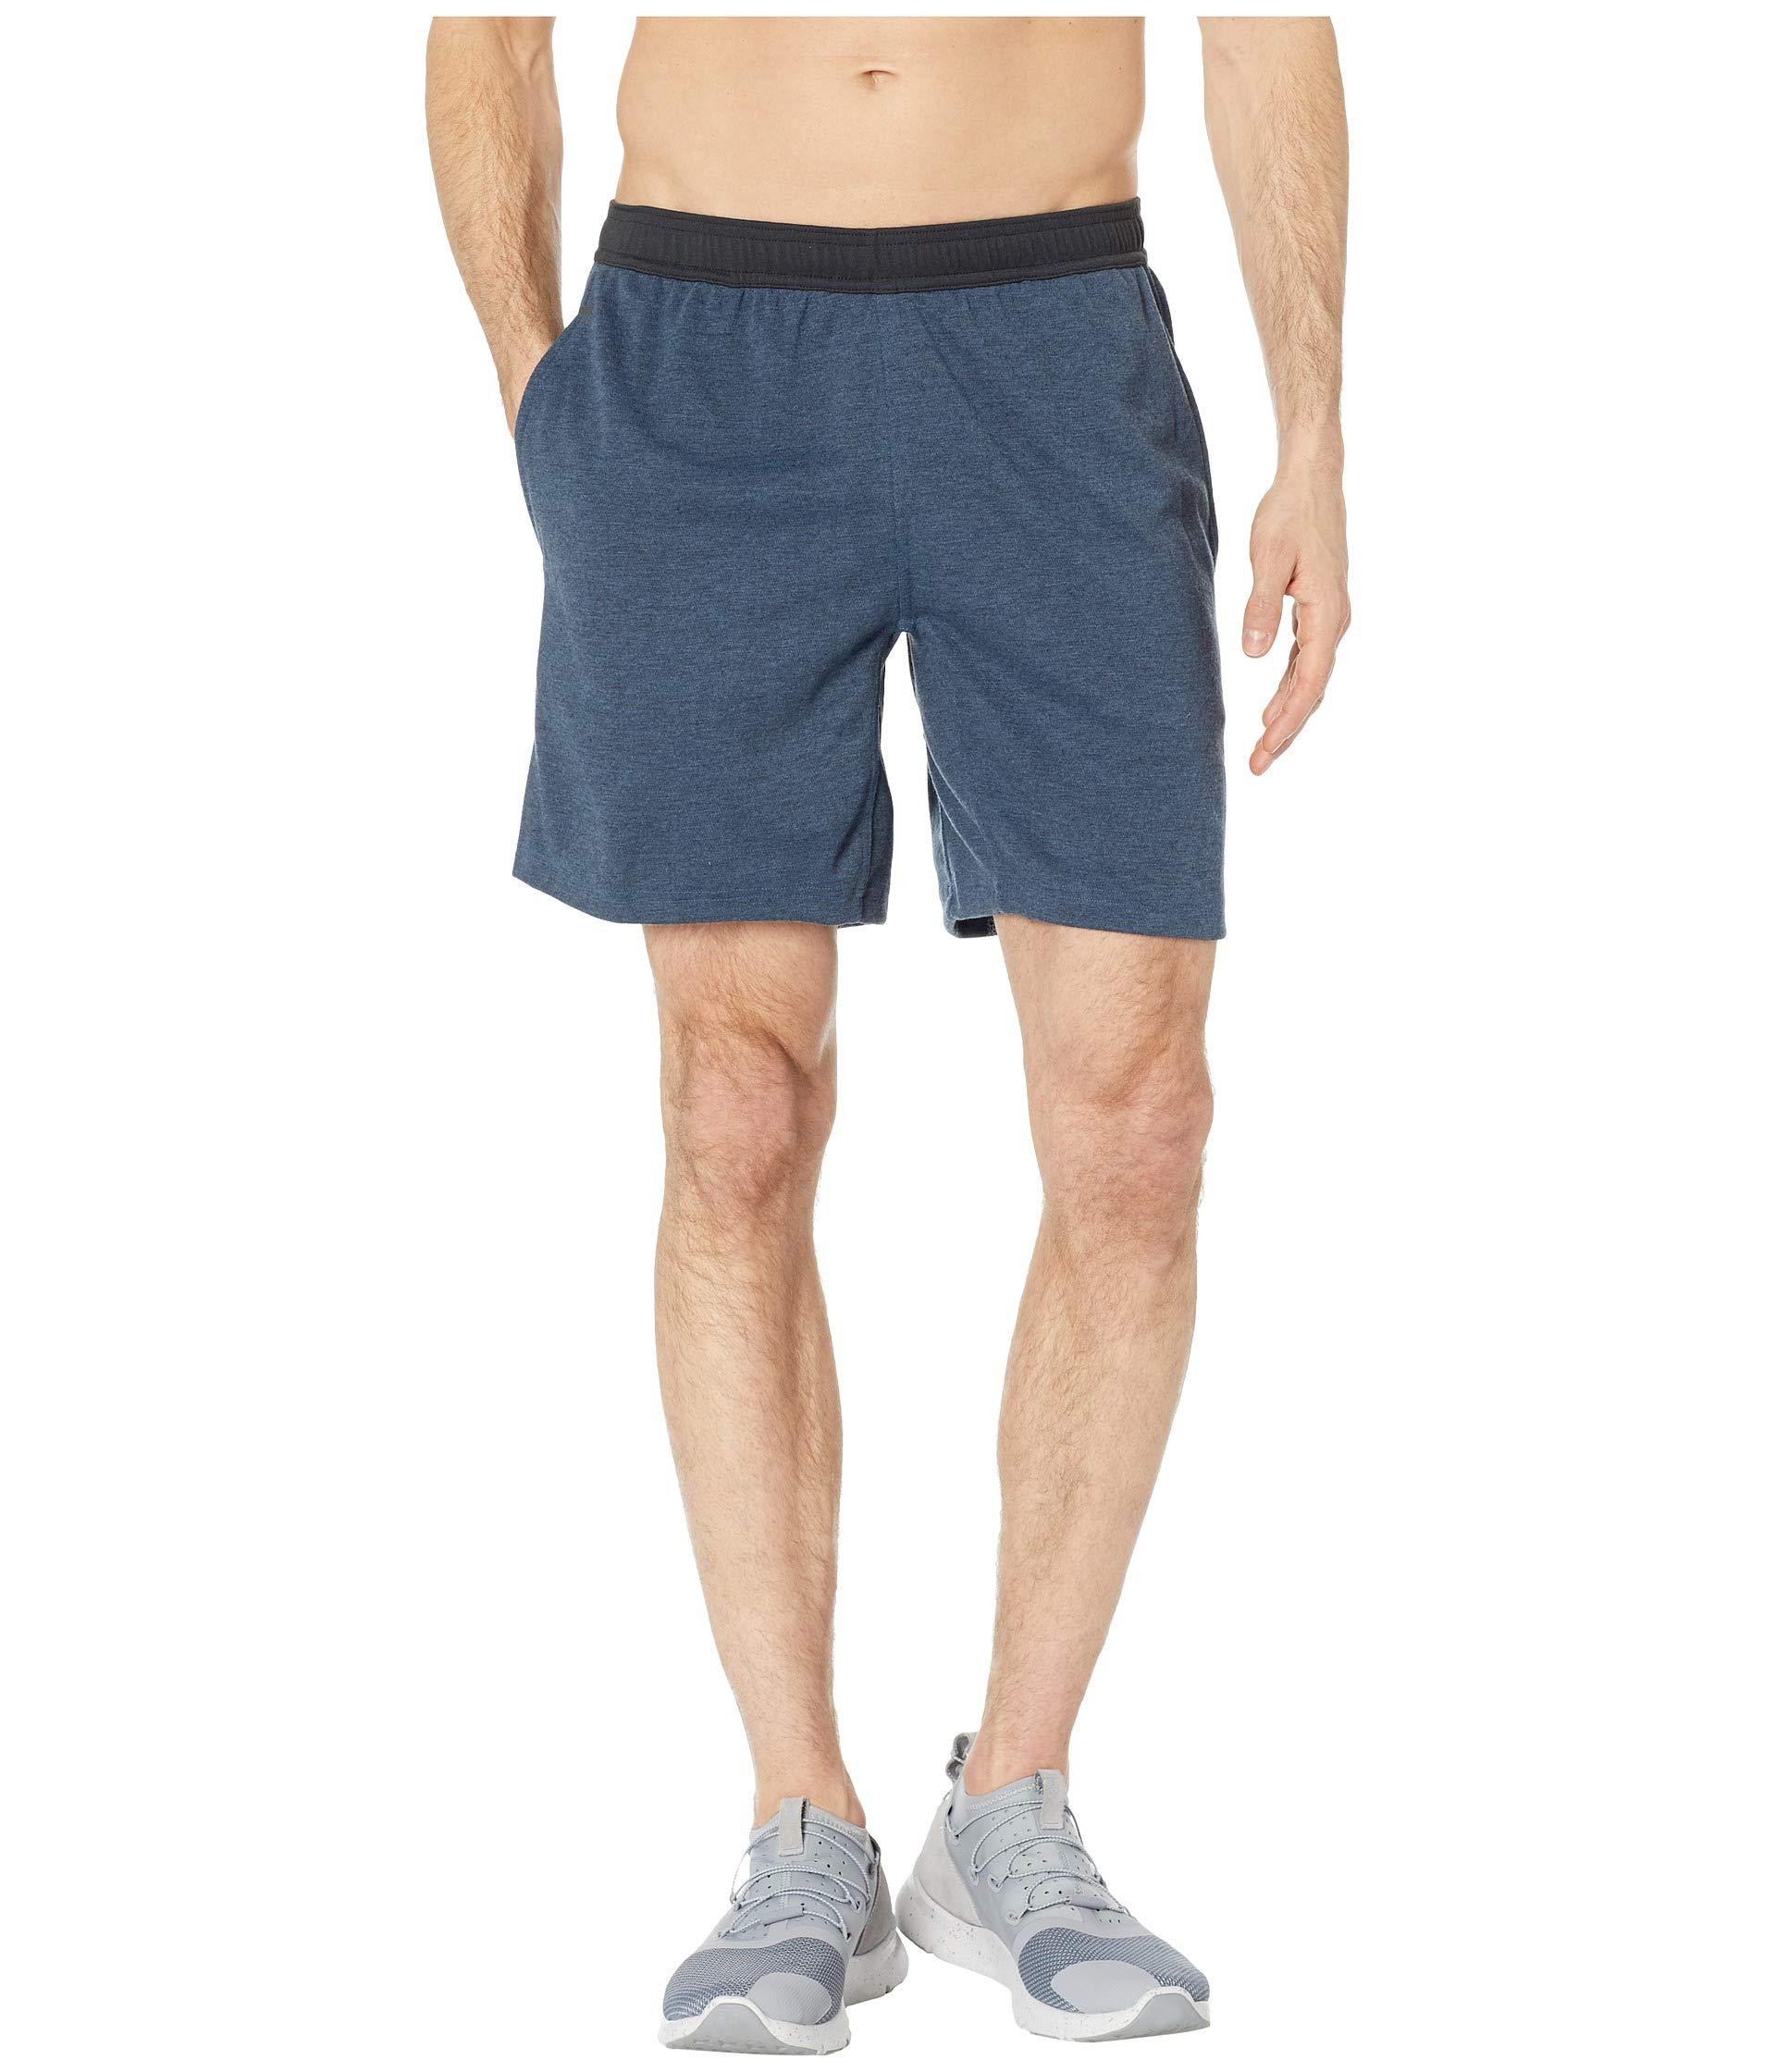 crossfit speedwick shorts